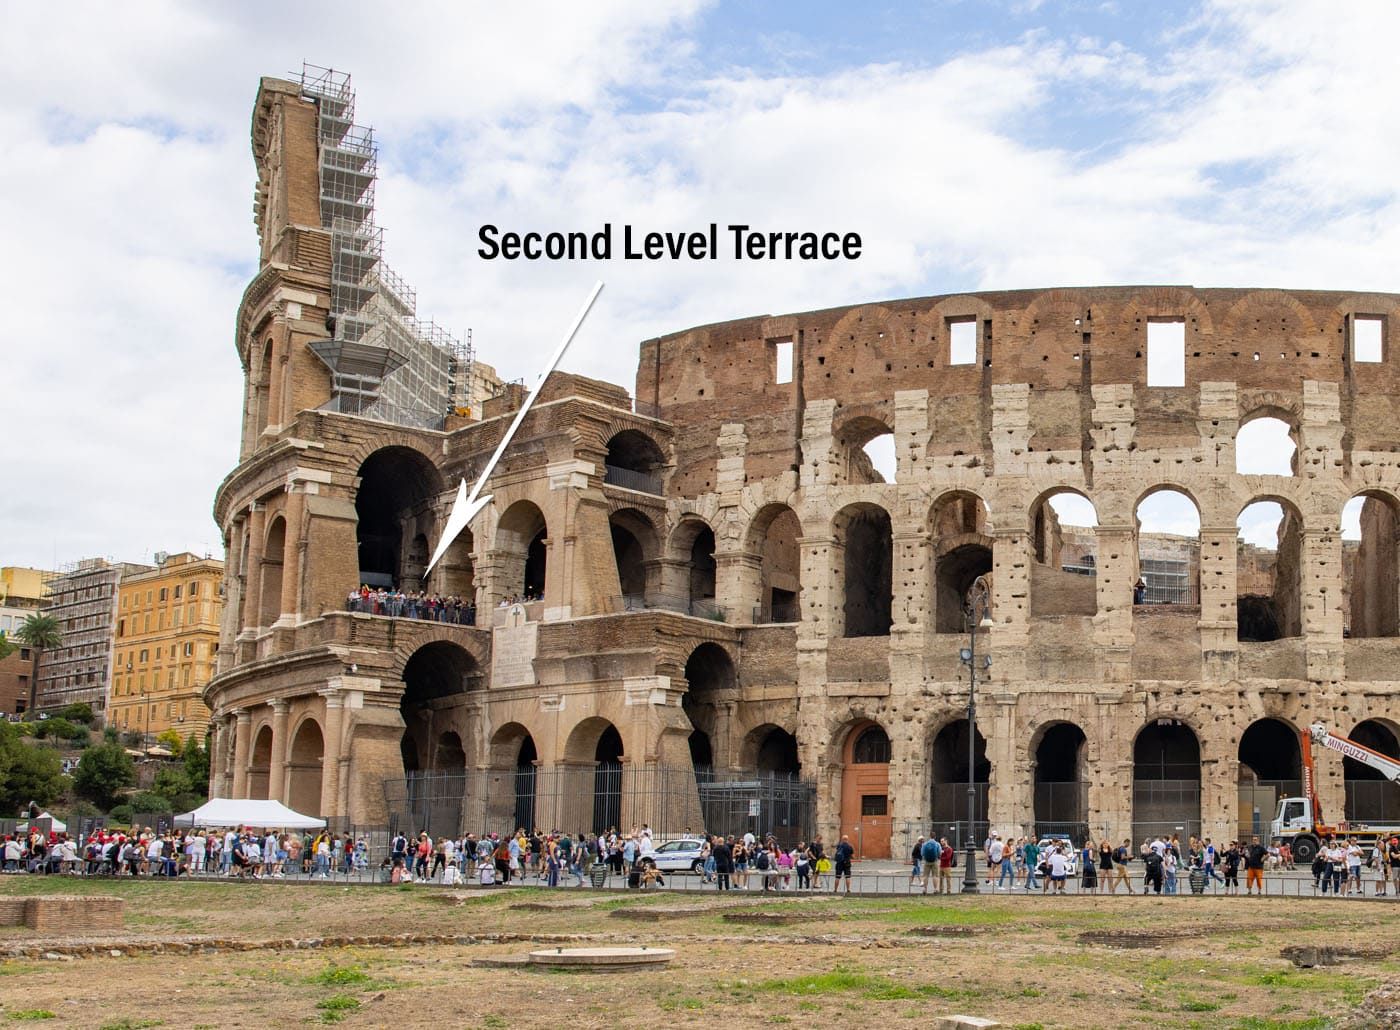 Second Level Terrace Colosseum